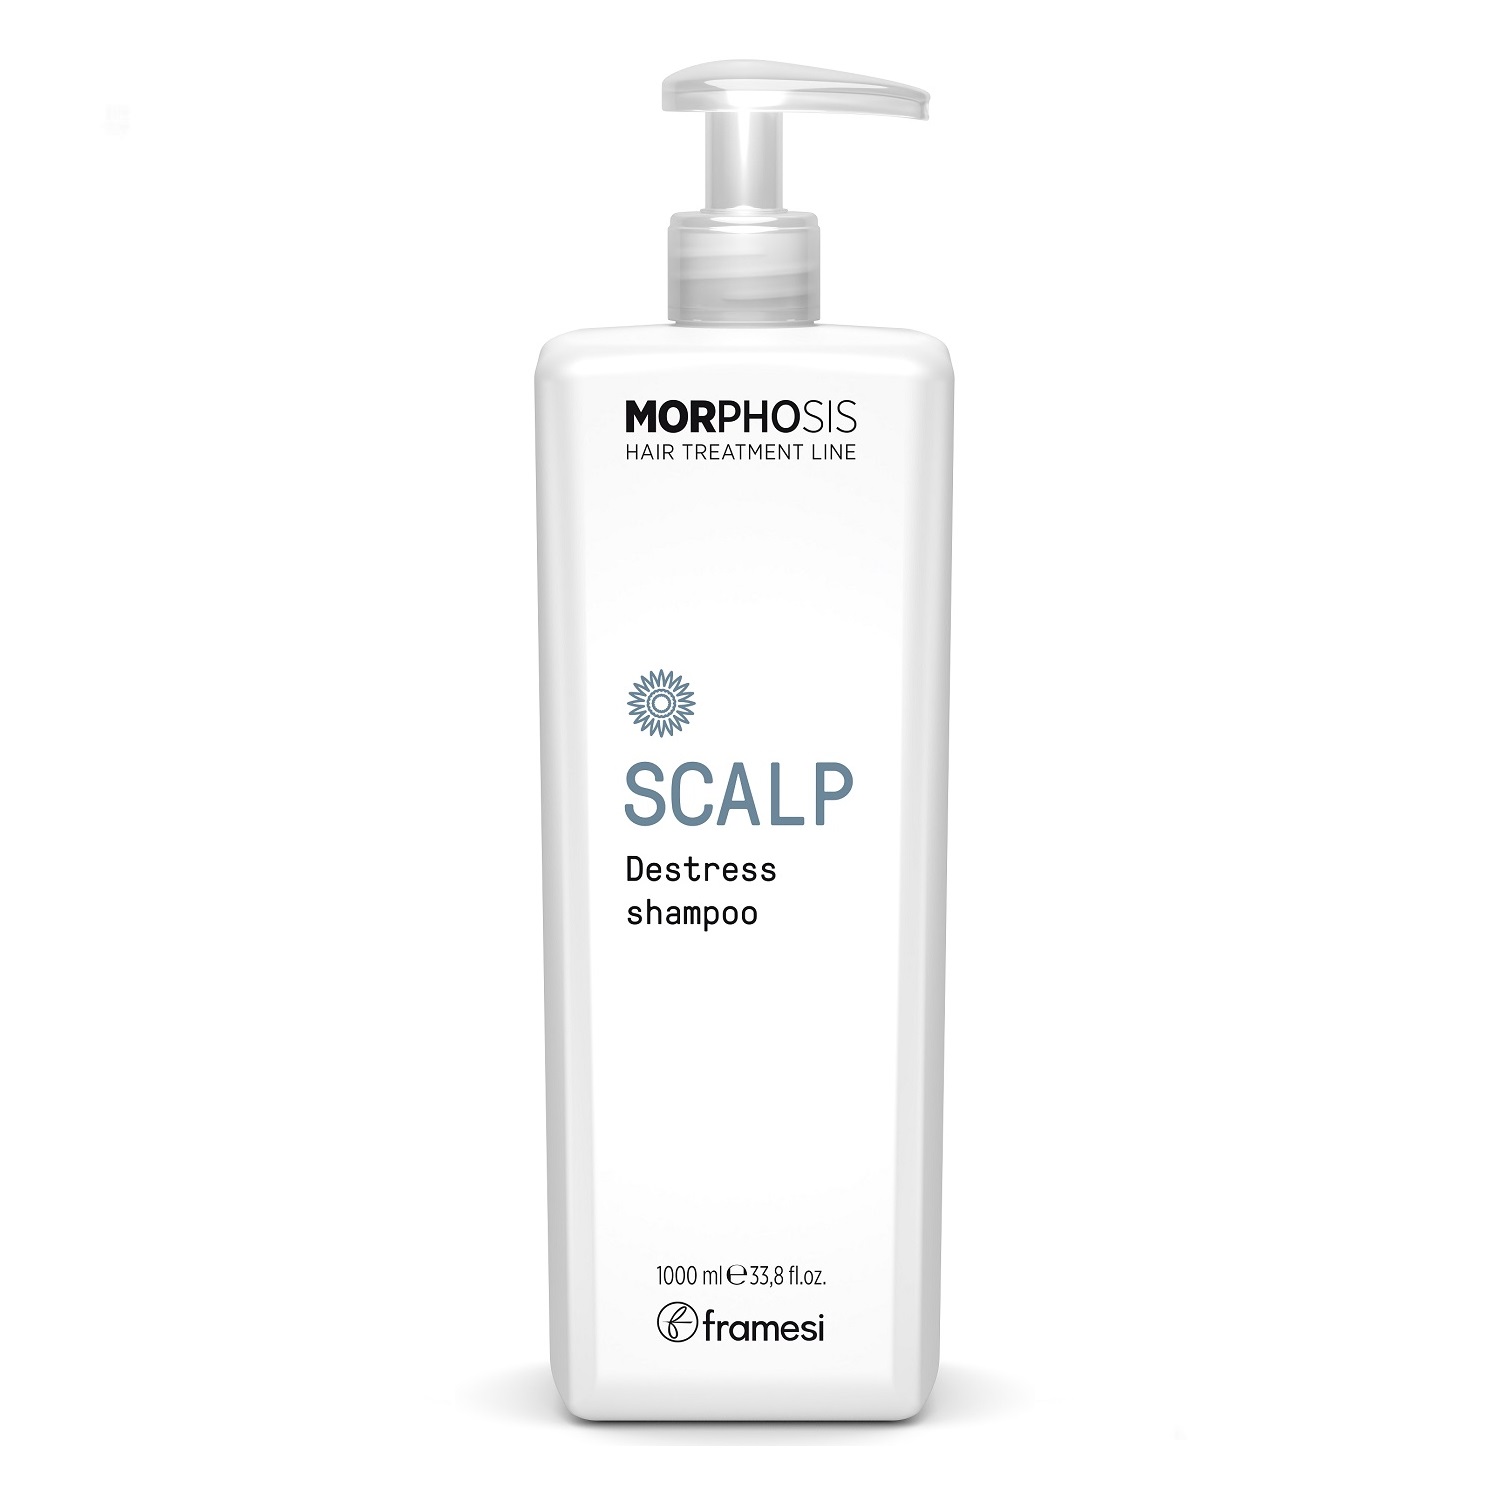 FRAMESI Шампунь для чувствительной кожи головы Scalp Destress Shampoo, 1000 мл (FRAMESI, Morphosis) сыворотка для ухода за волосами framesi сыворотка для чувствительной кожи головы scalp destress serum